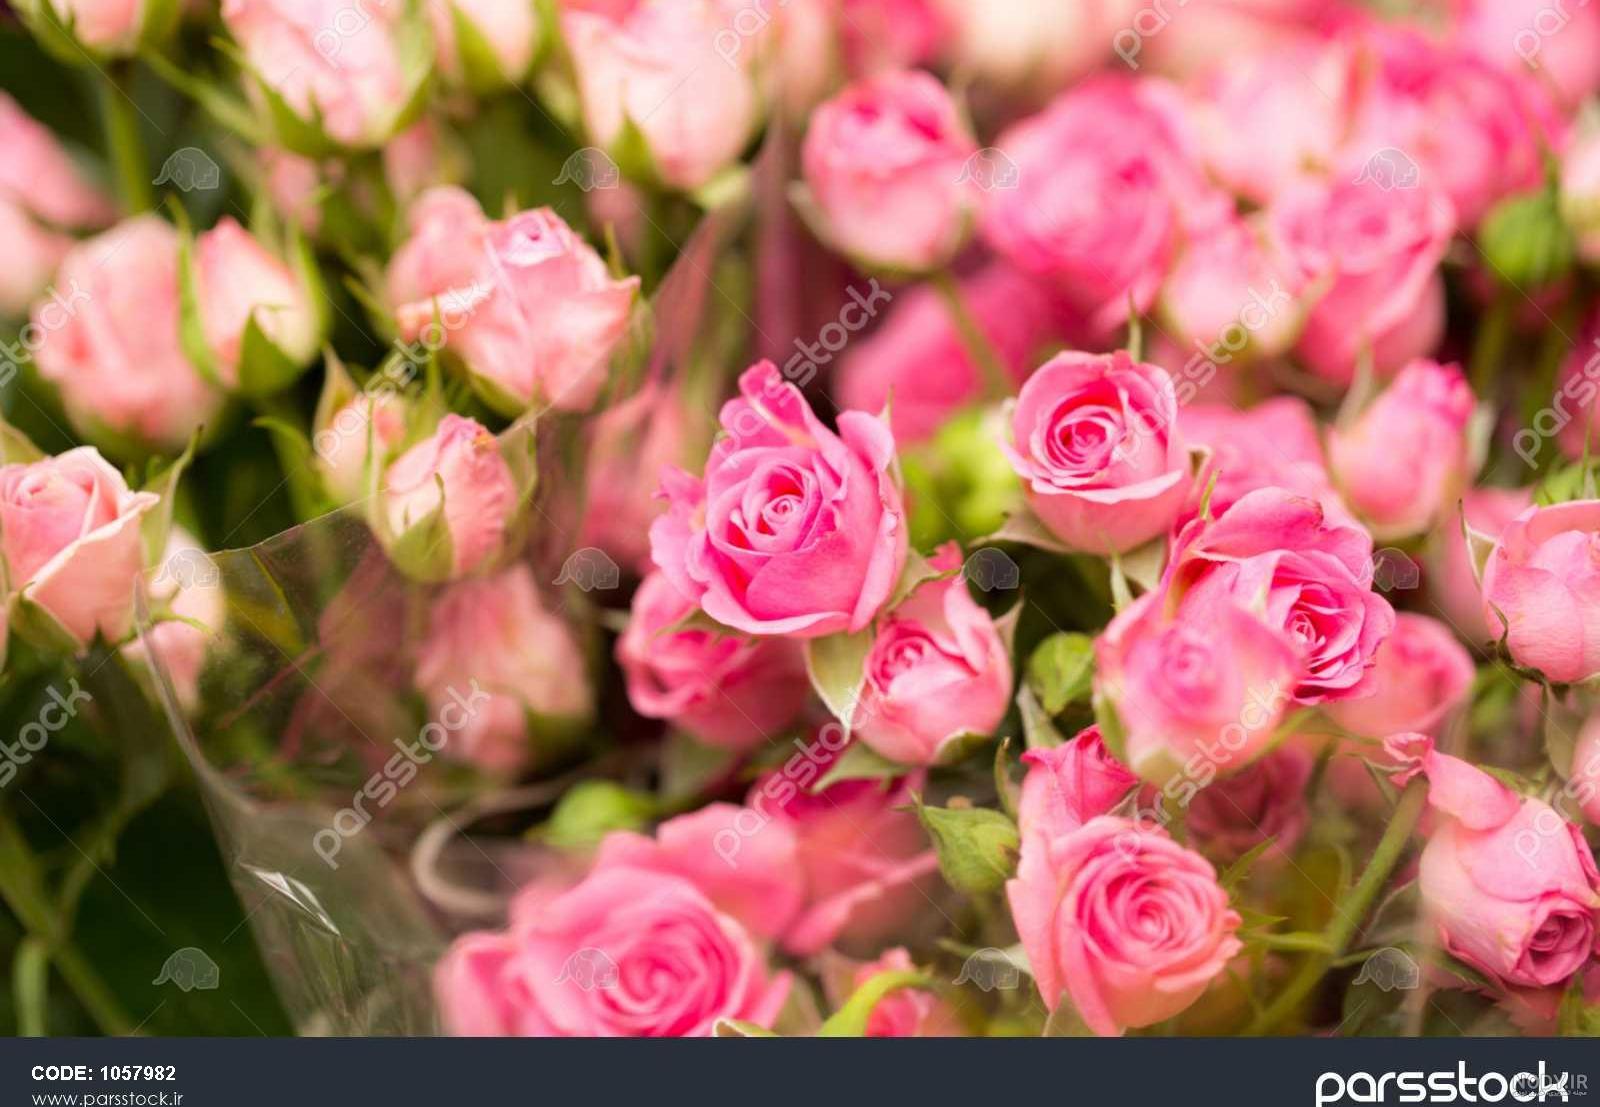 عکس گلهای بسیار زیبای جهان برای پروفایل